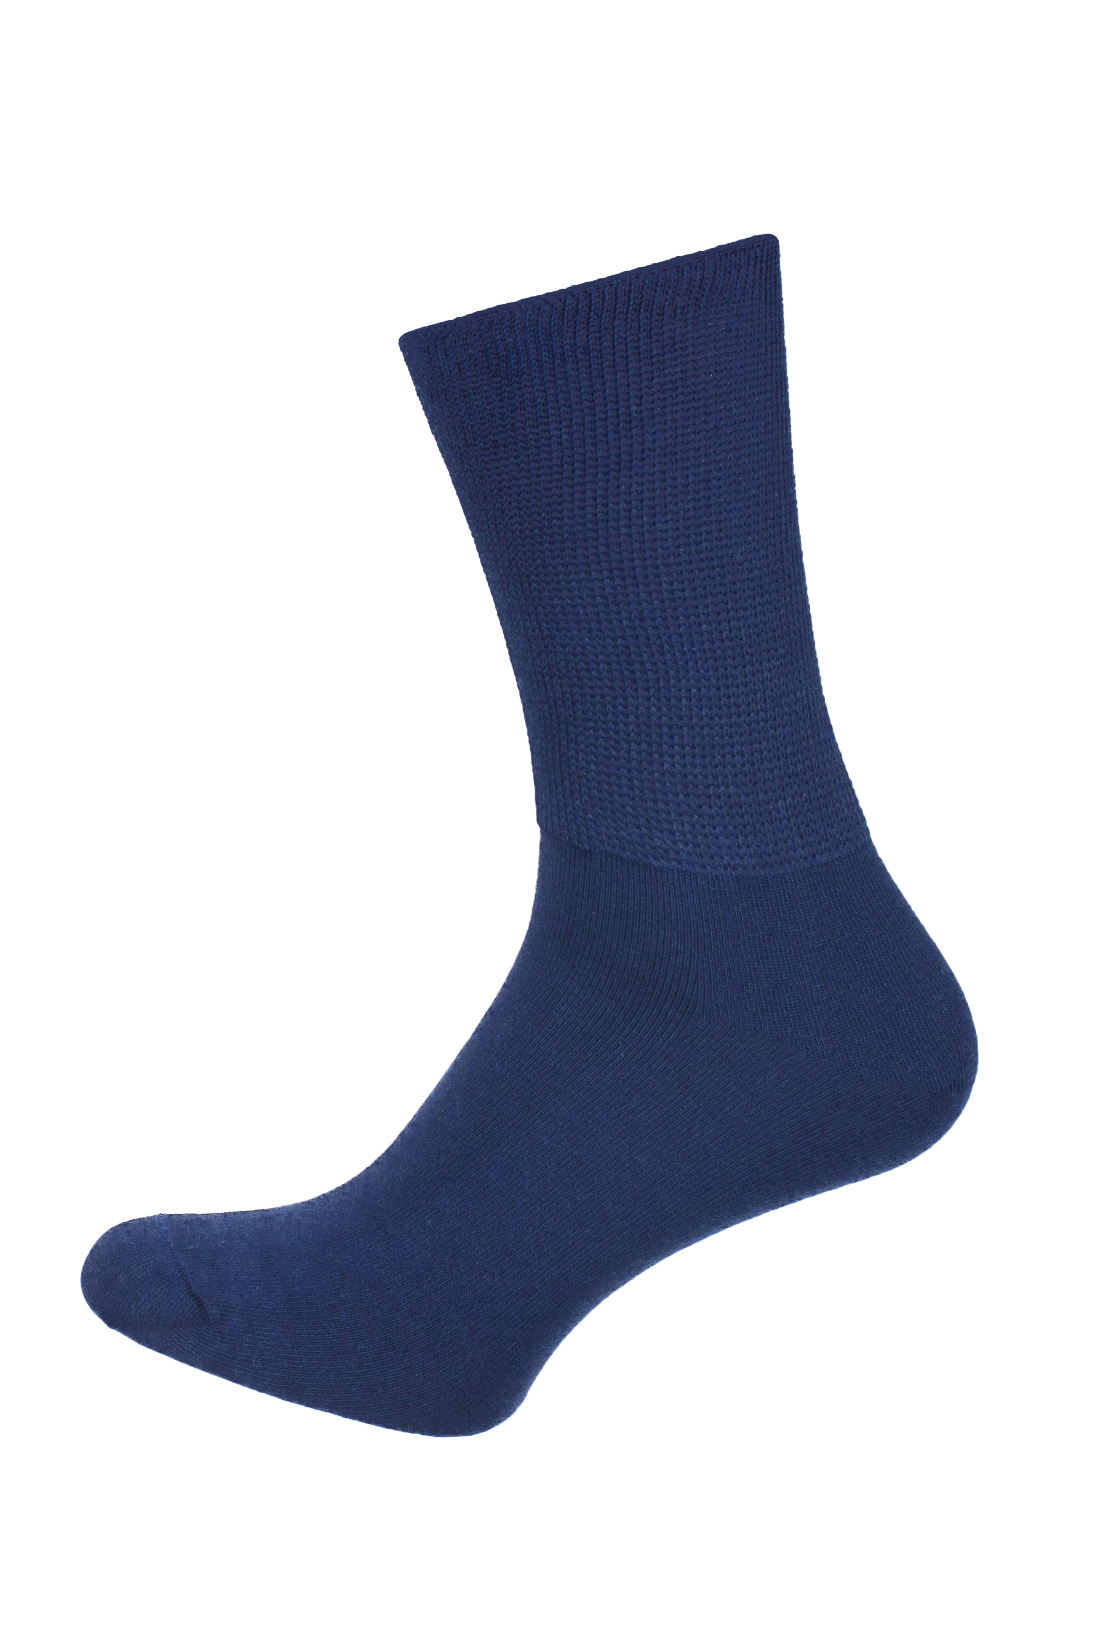 medische sokken - blauw -therapeutische sokken